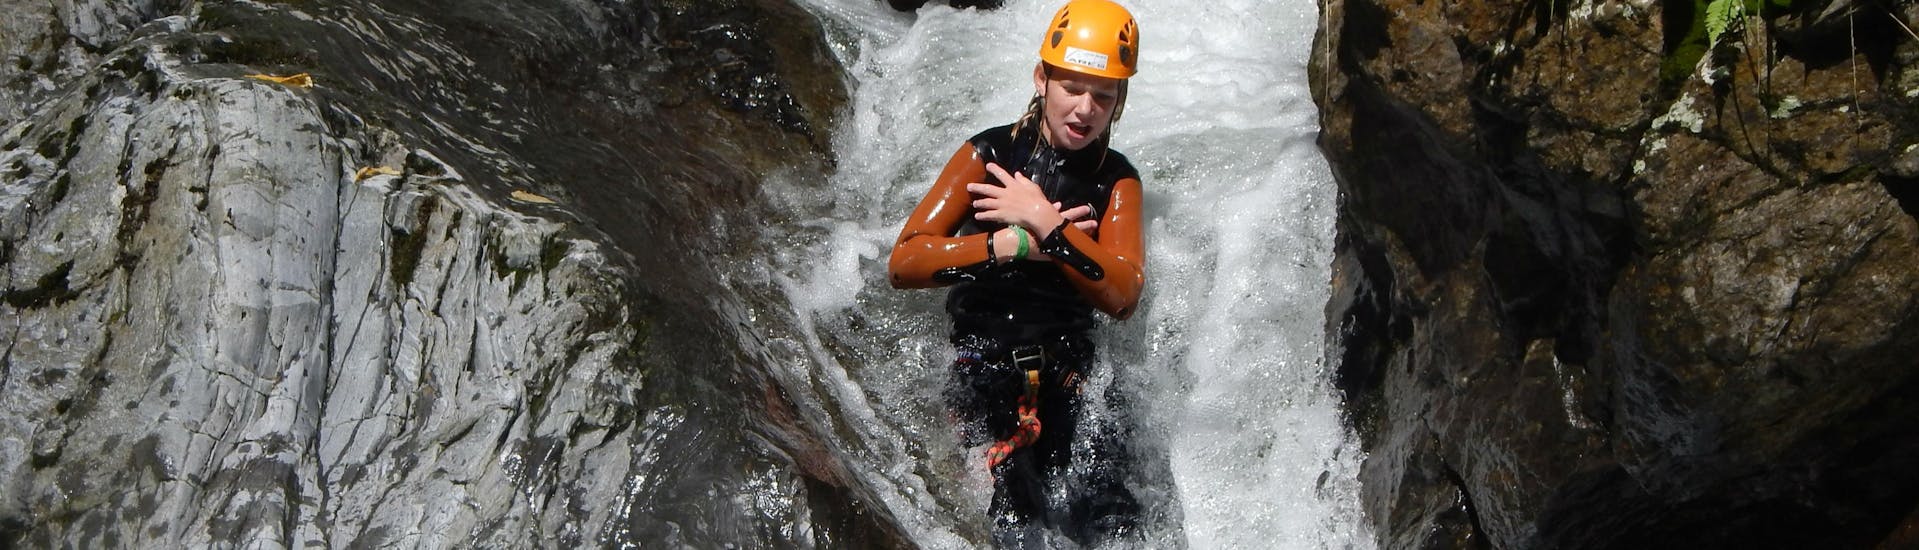 Een persoon glijdt van een waterval tijdens fun canyoning bij de Weissensee in Karinthië met ARES Drautal Canyoning